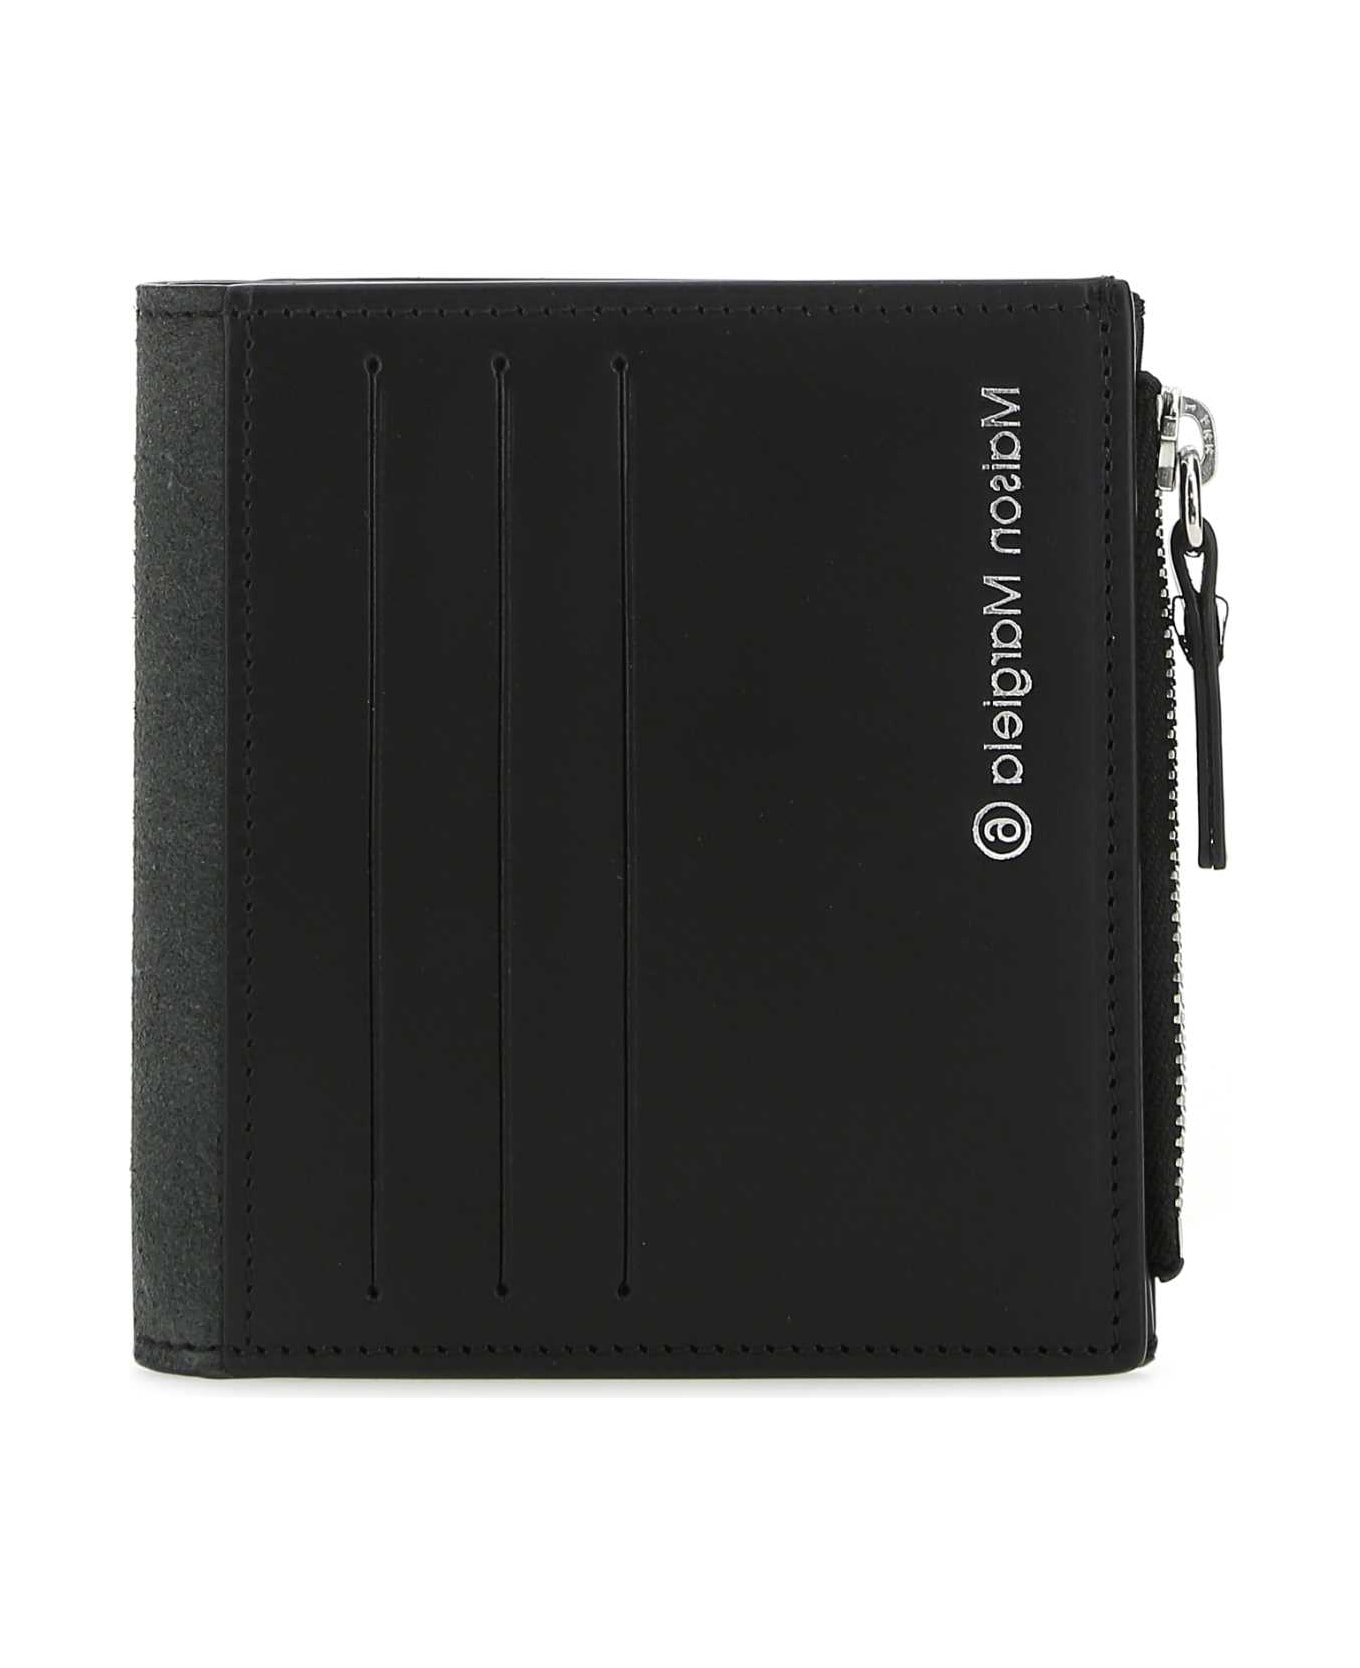 MM6 Maison Margiela Black Leather Wallet - T8013